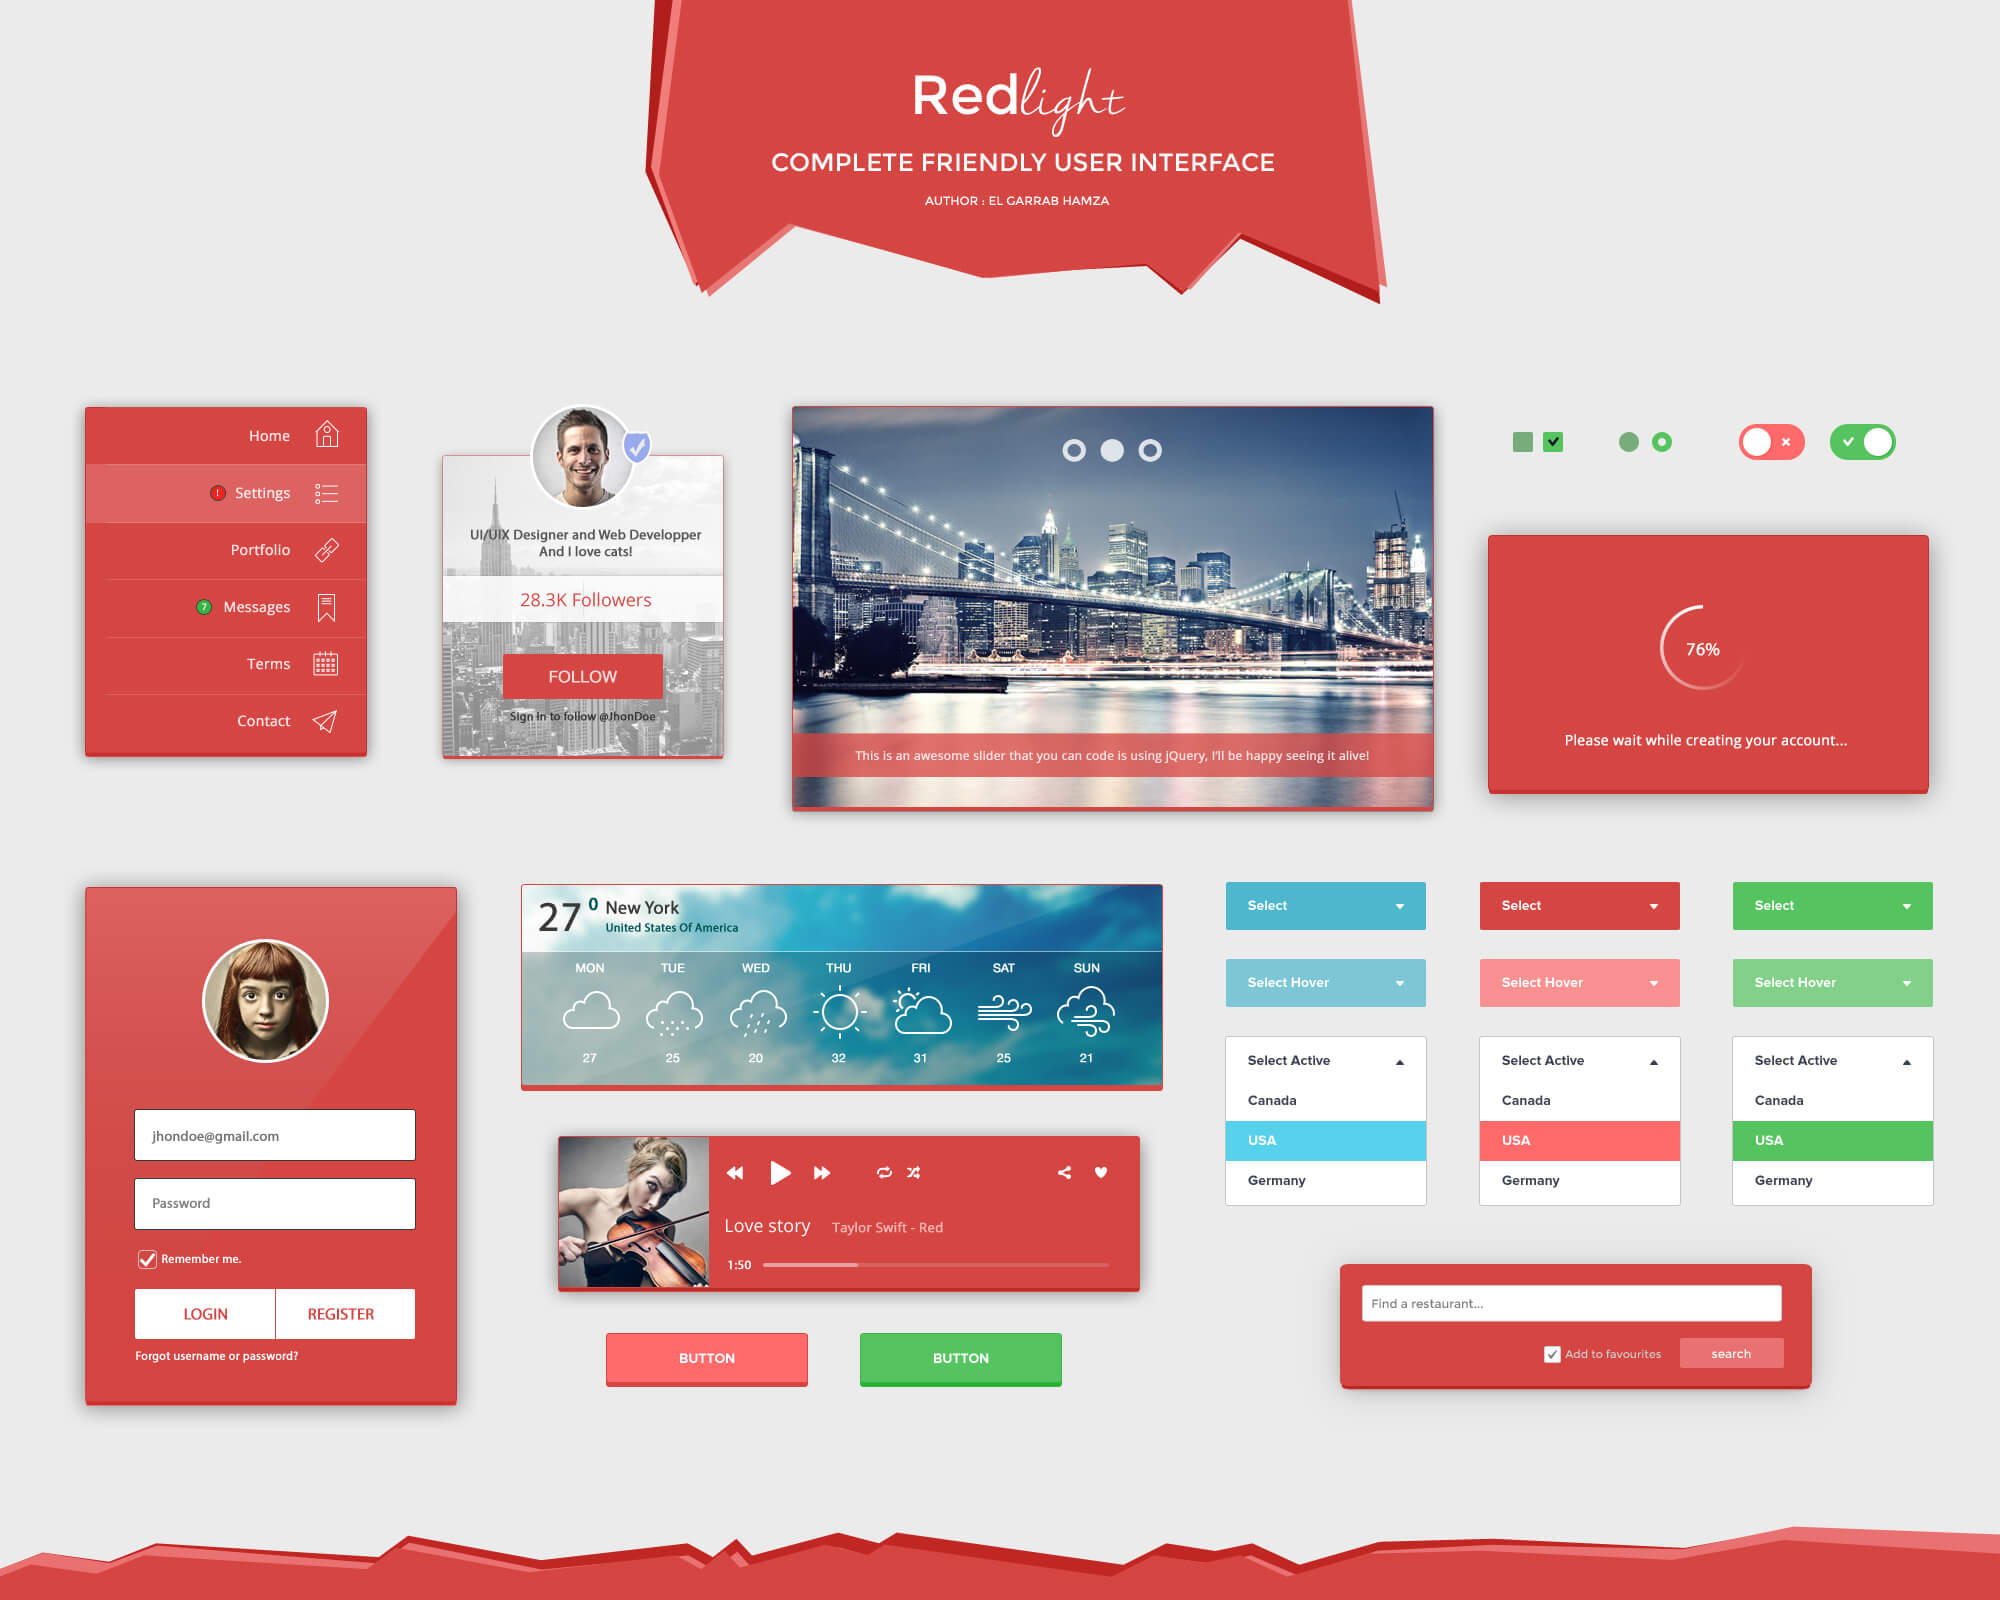 红光-完整友好的用户界面 UI设计 PSD素材